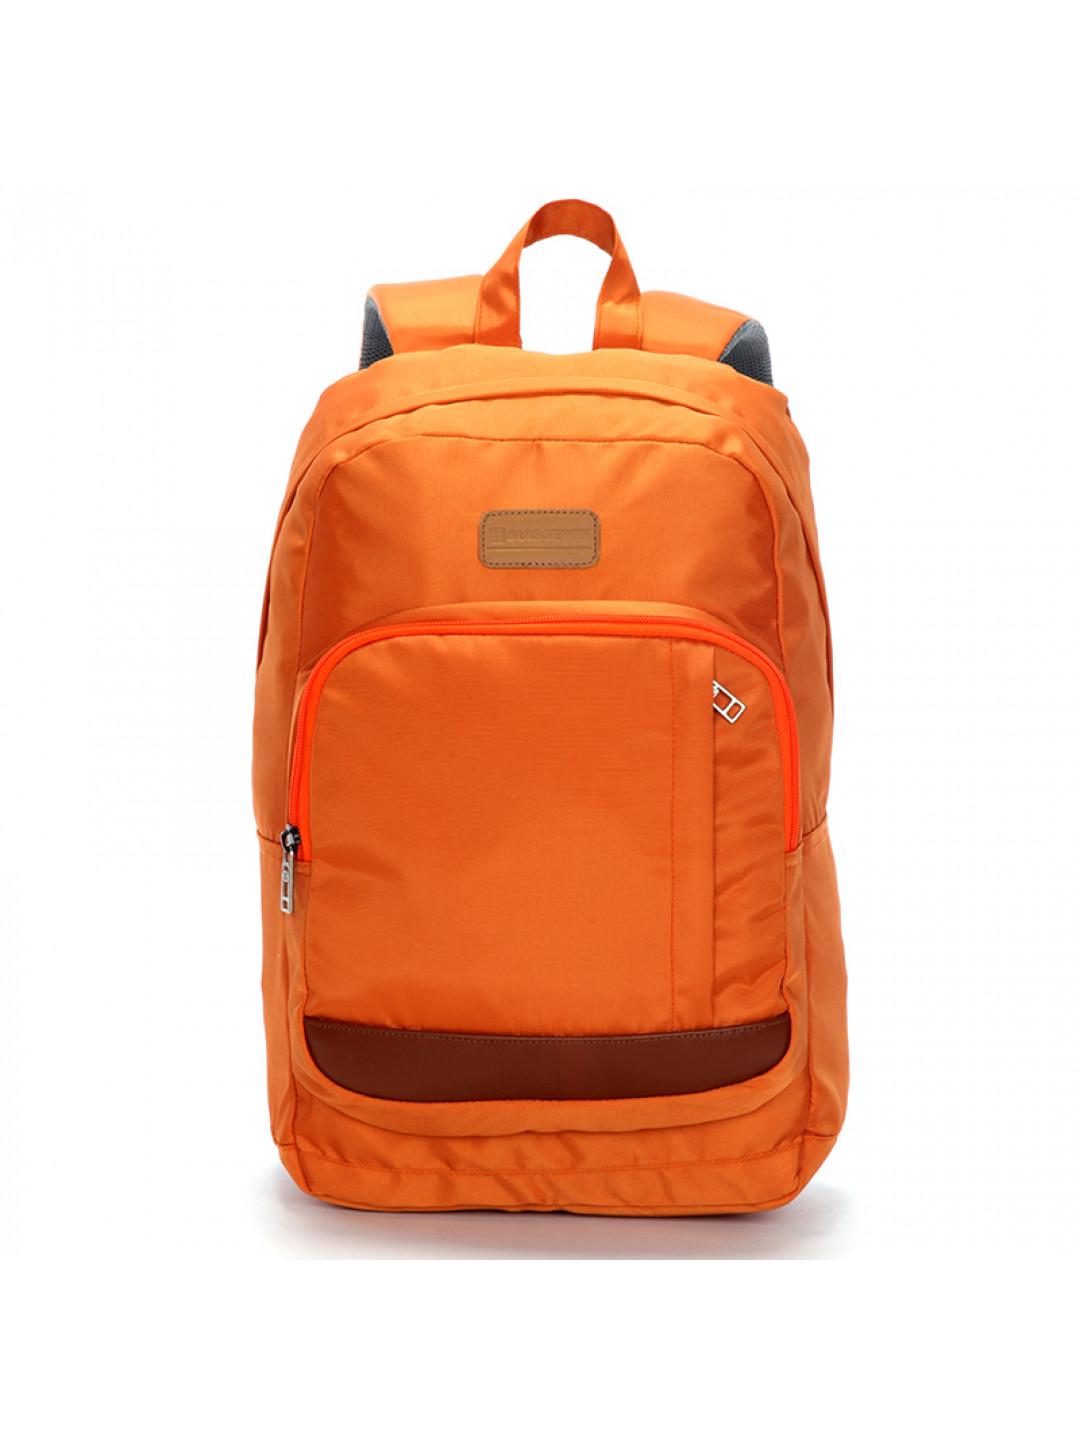 Školní a městský batoh Suissewin Heredie oranžový